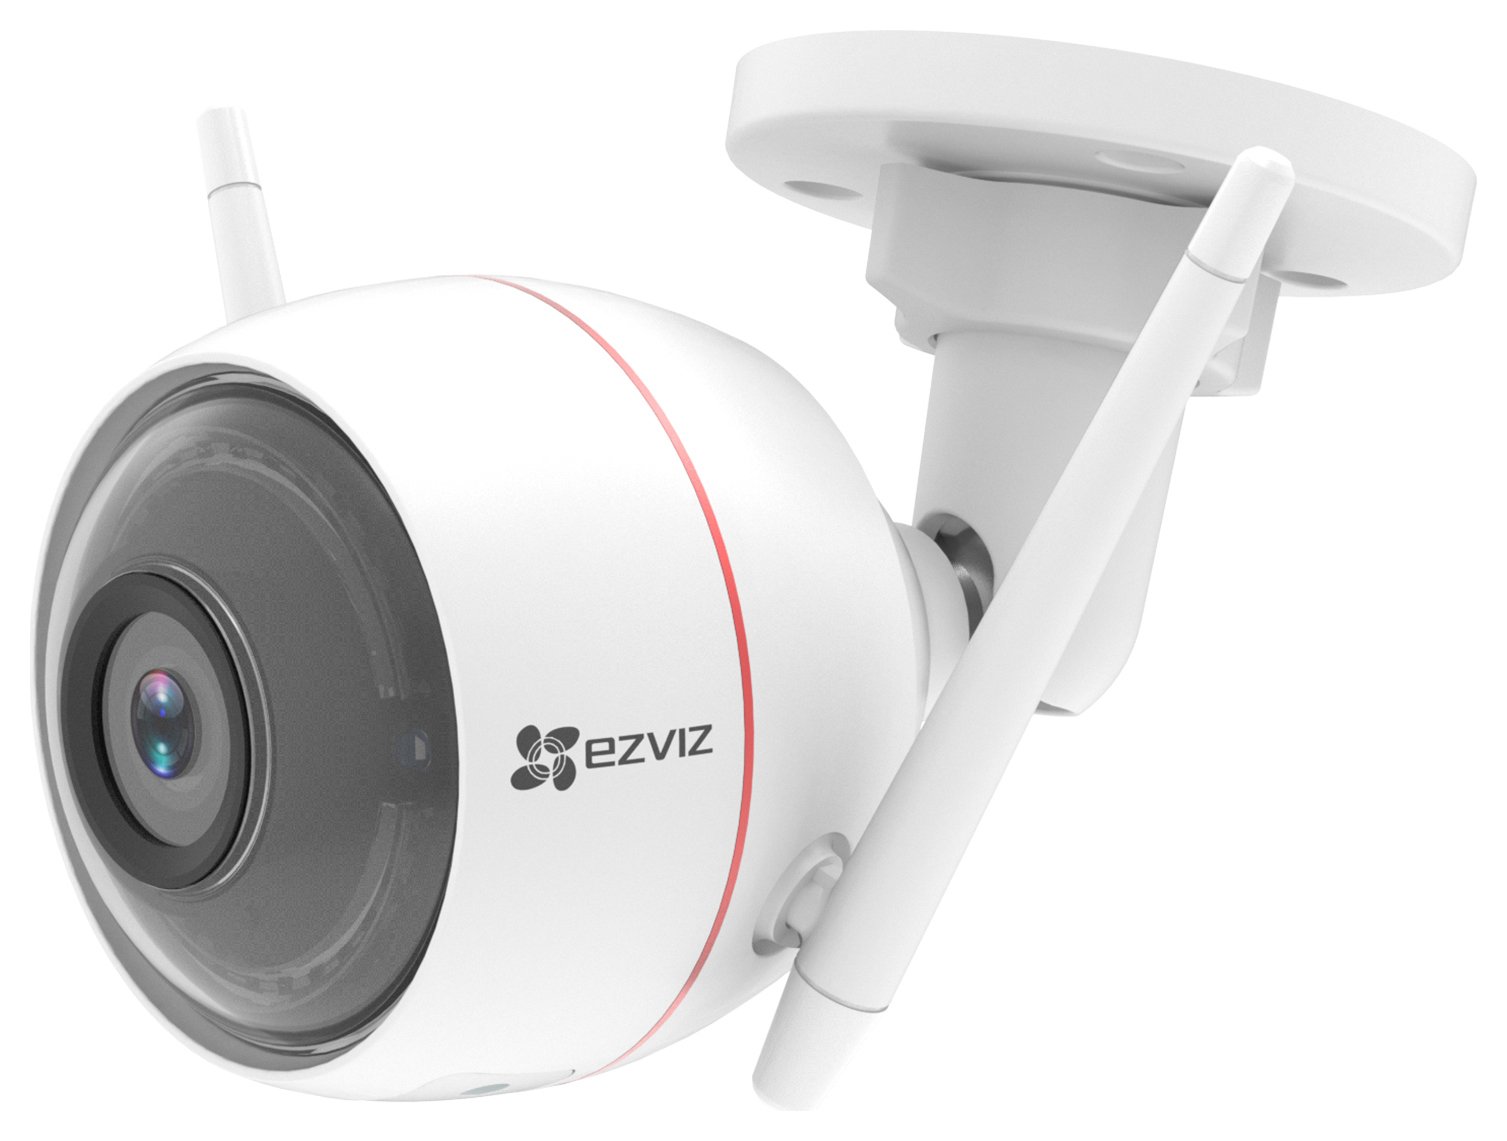 EZVIZ Full HD Wi-Fi Outdoor Security Camera + Siren/Strobe